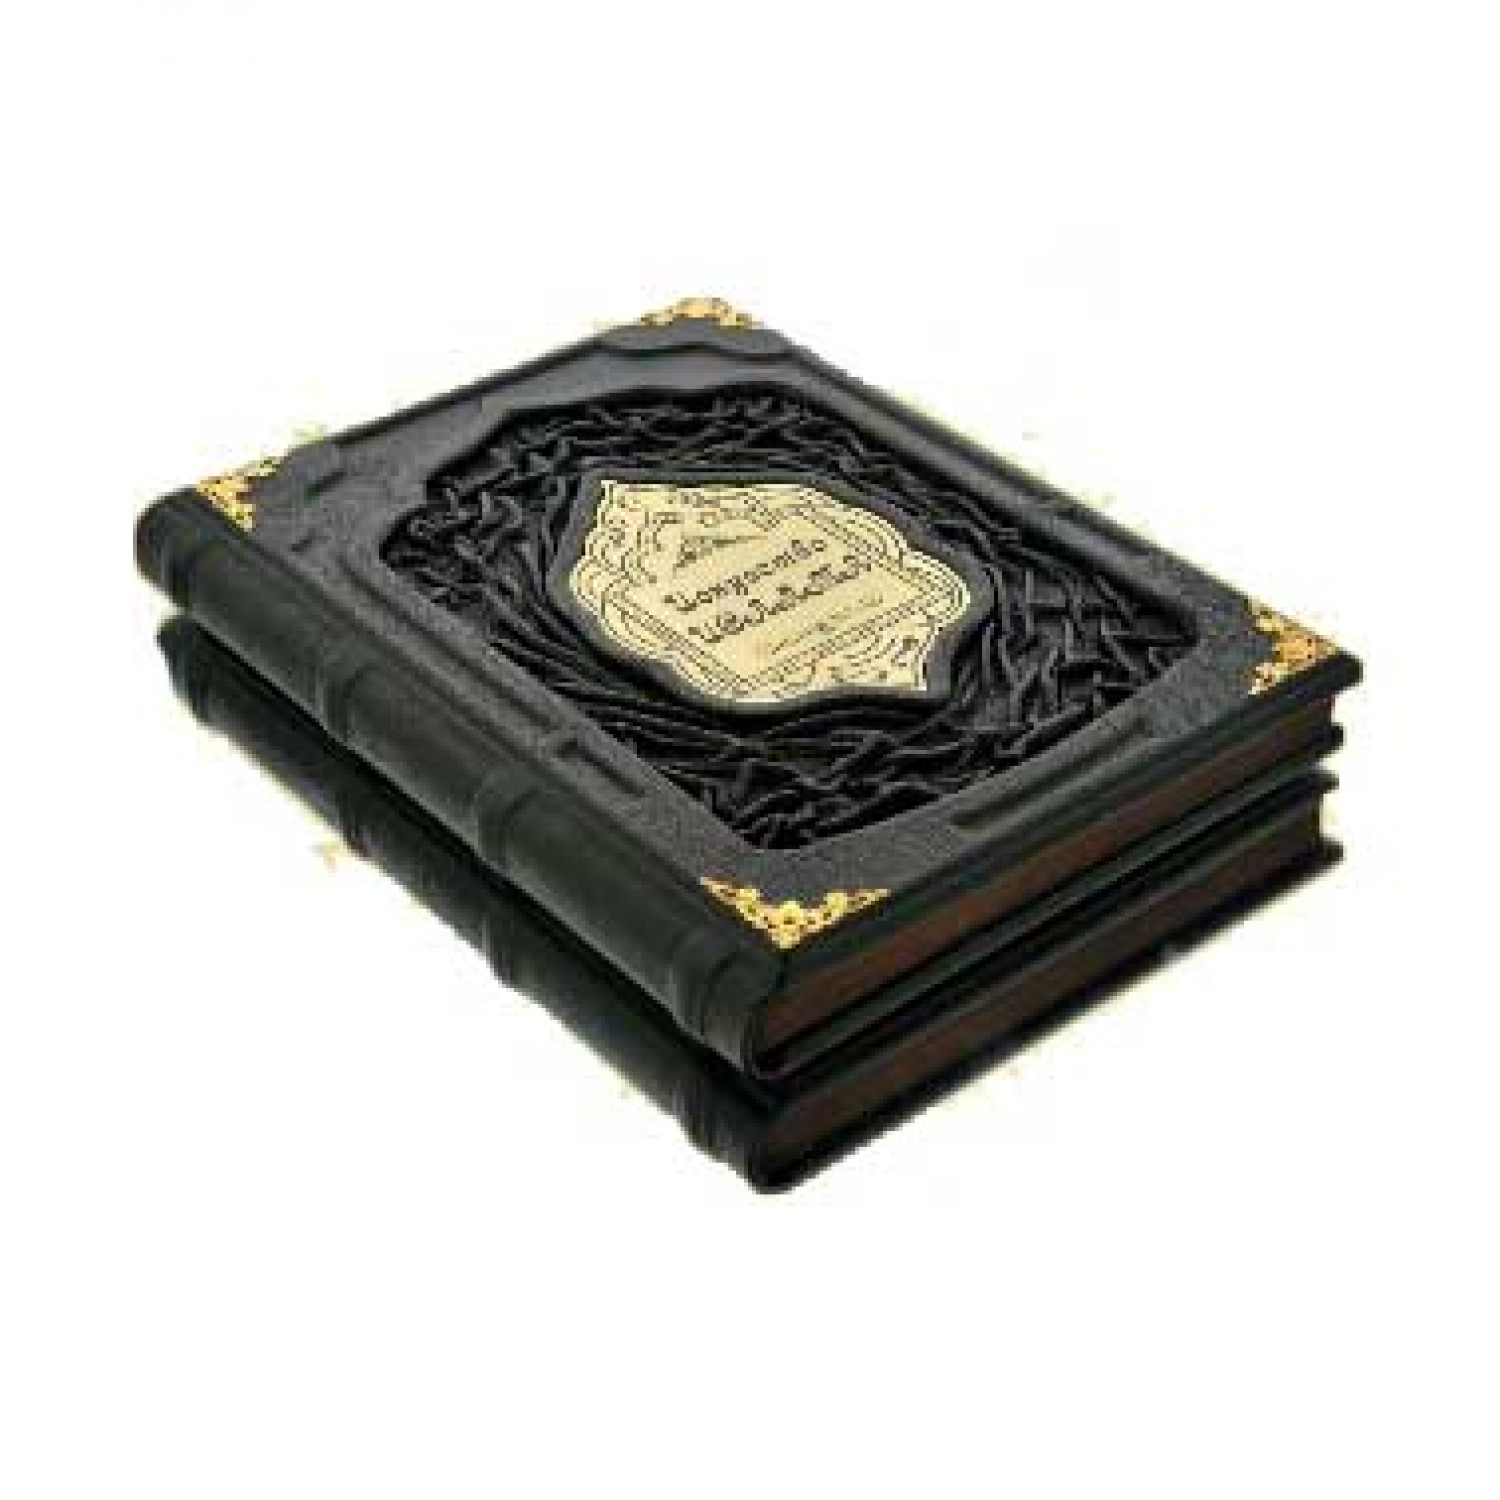 Подарочное издание книги "Искусство Ислама" в кожаном переплете ручной работы